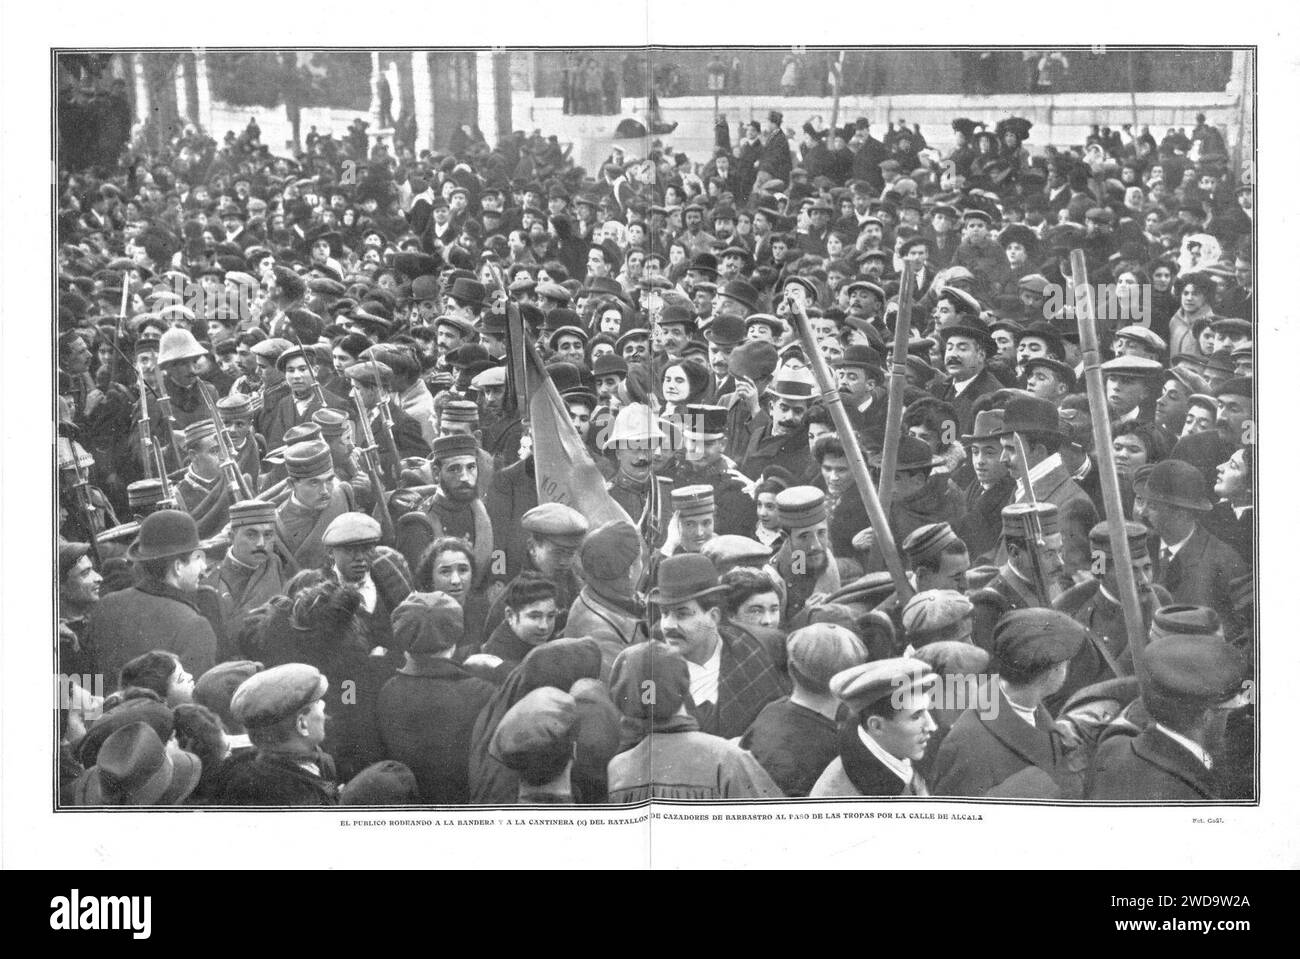 1910-01-27, Actualidades, El público rodeando a la bandera y a la cantinera (x) del batallón de cazadores de Barbastro al paso de las tropas por la calle de Alcalá, Goñi. Stock Photo